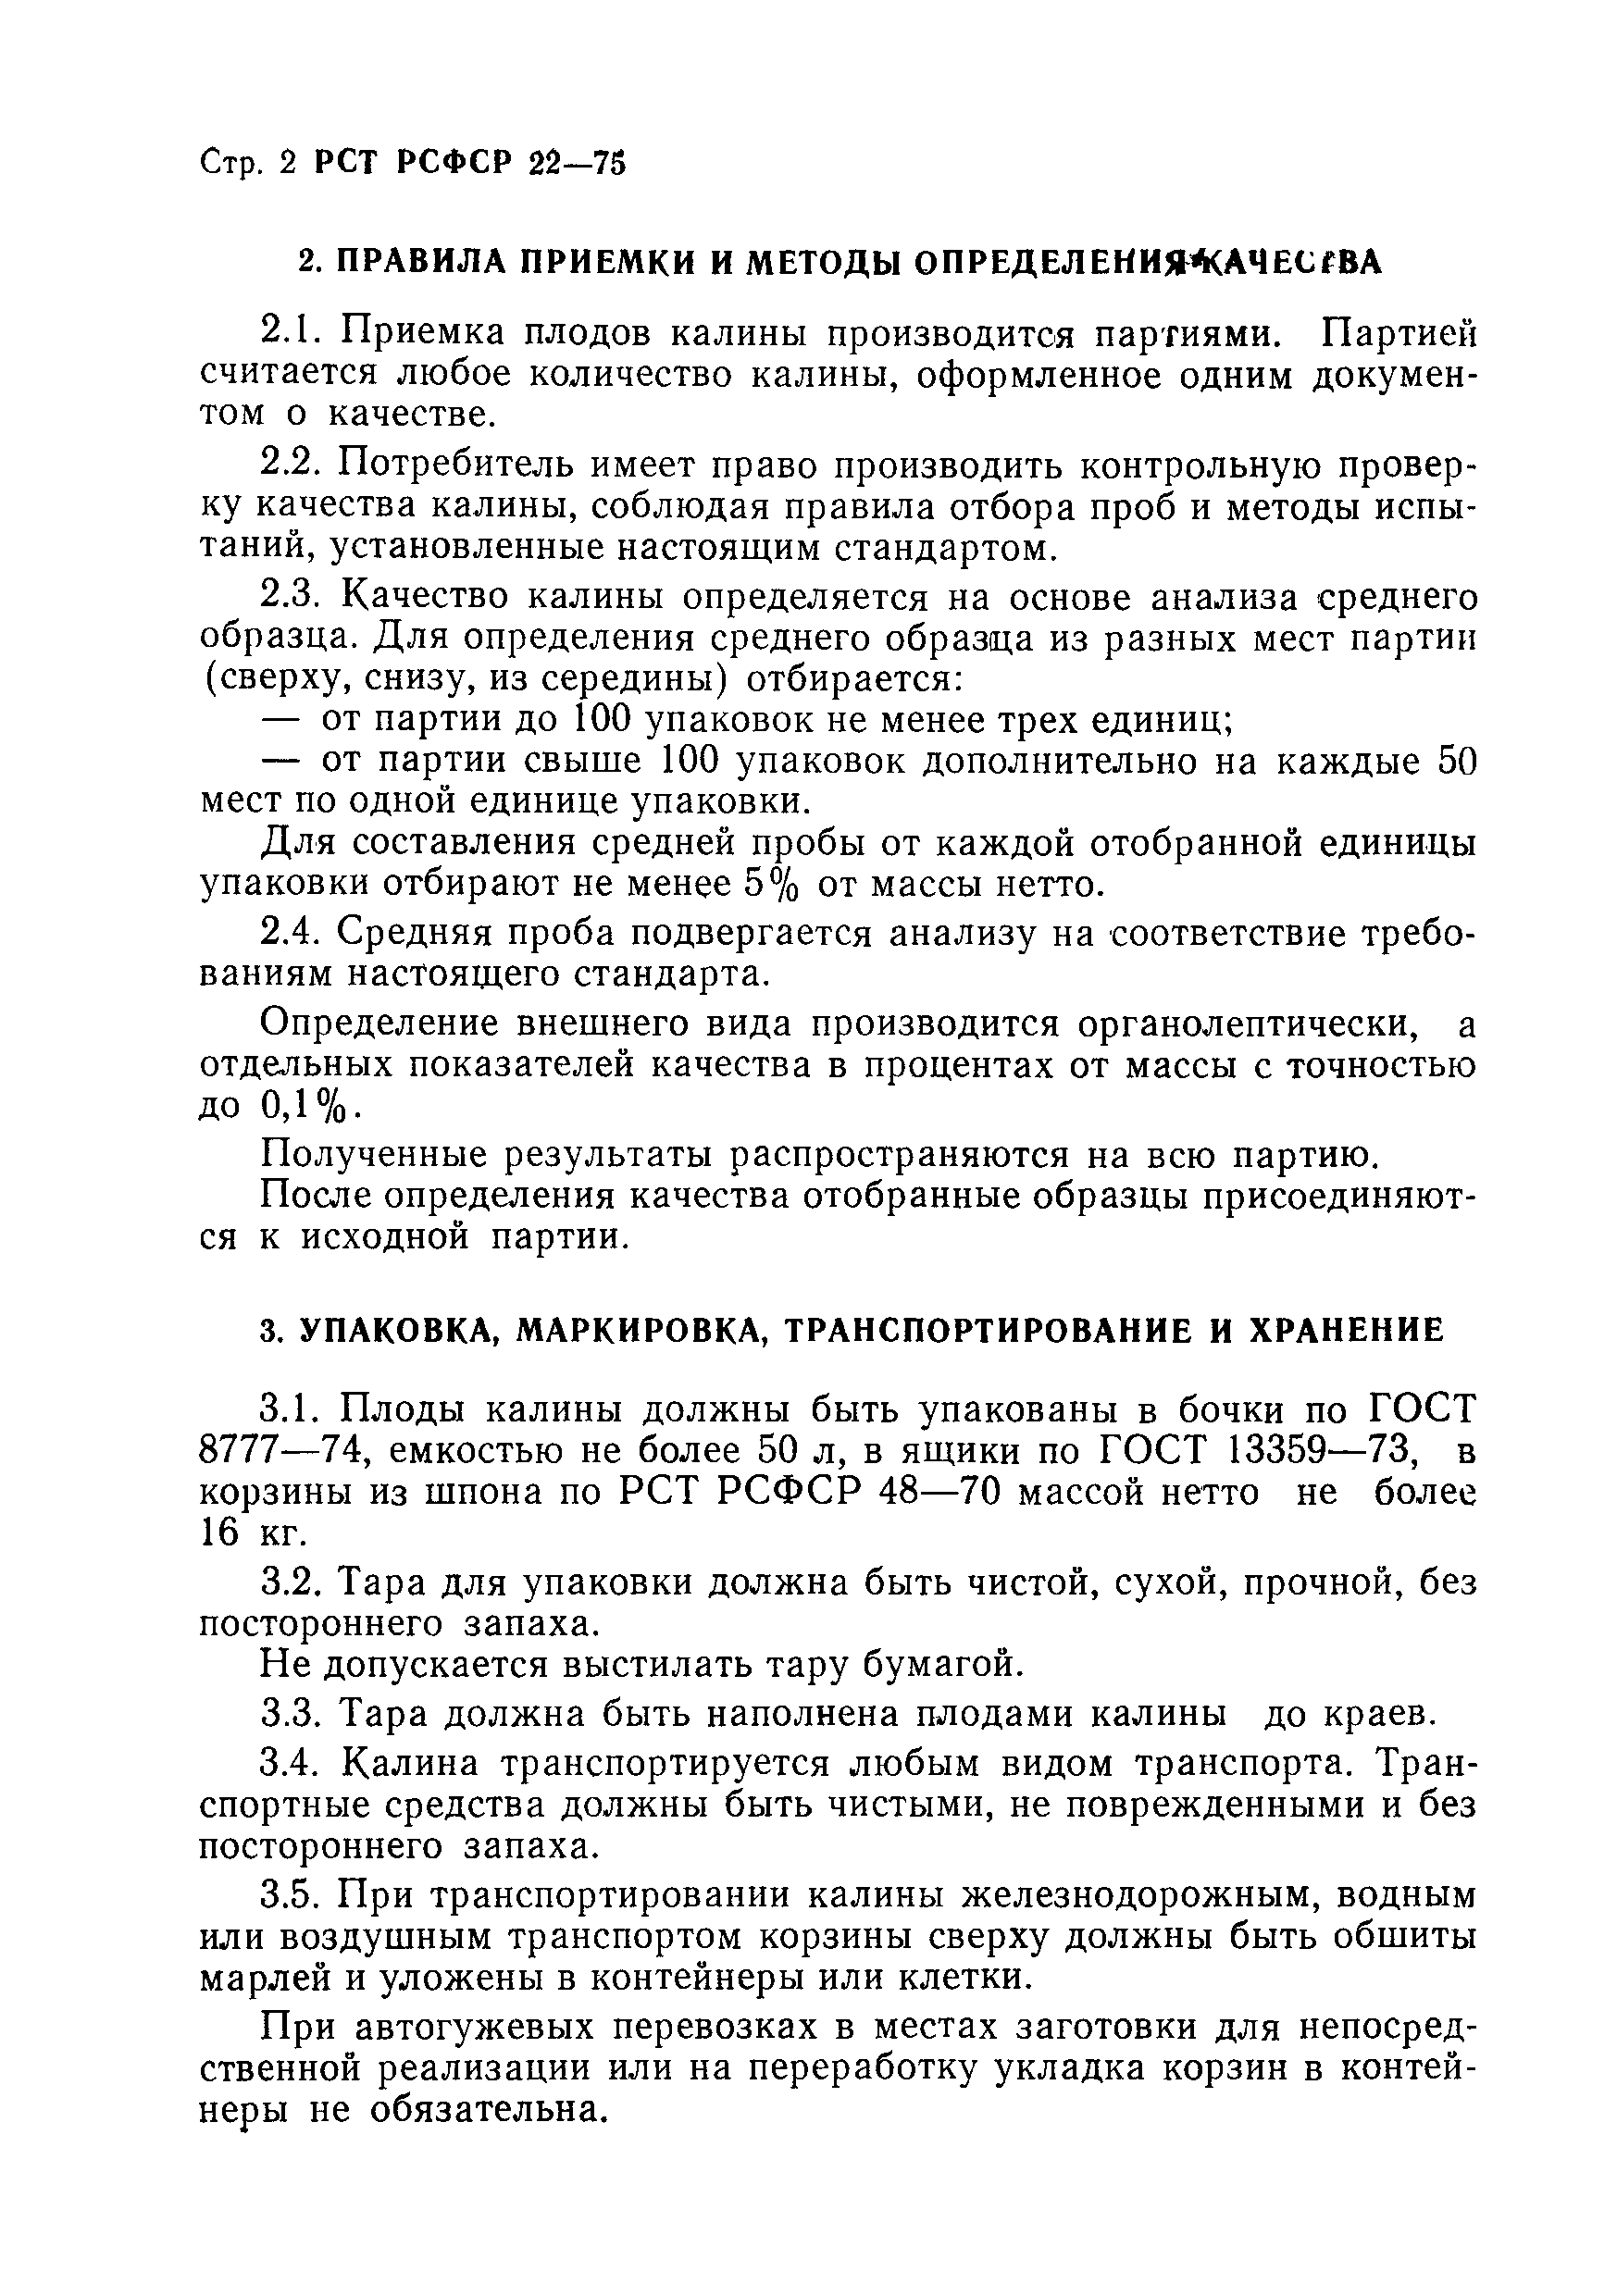 РСТ РСФСР 22-75